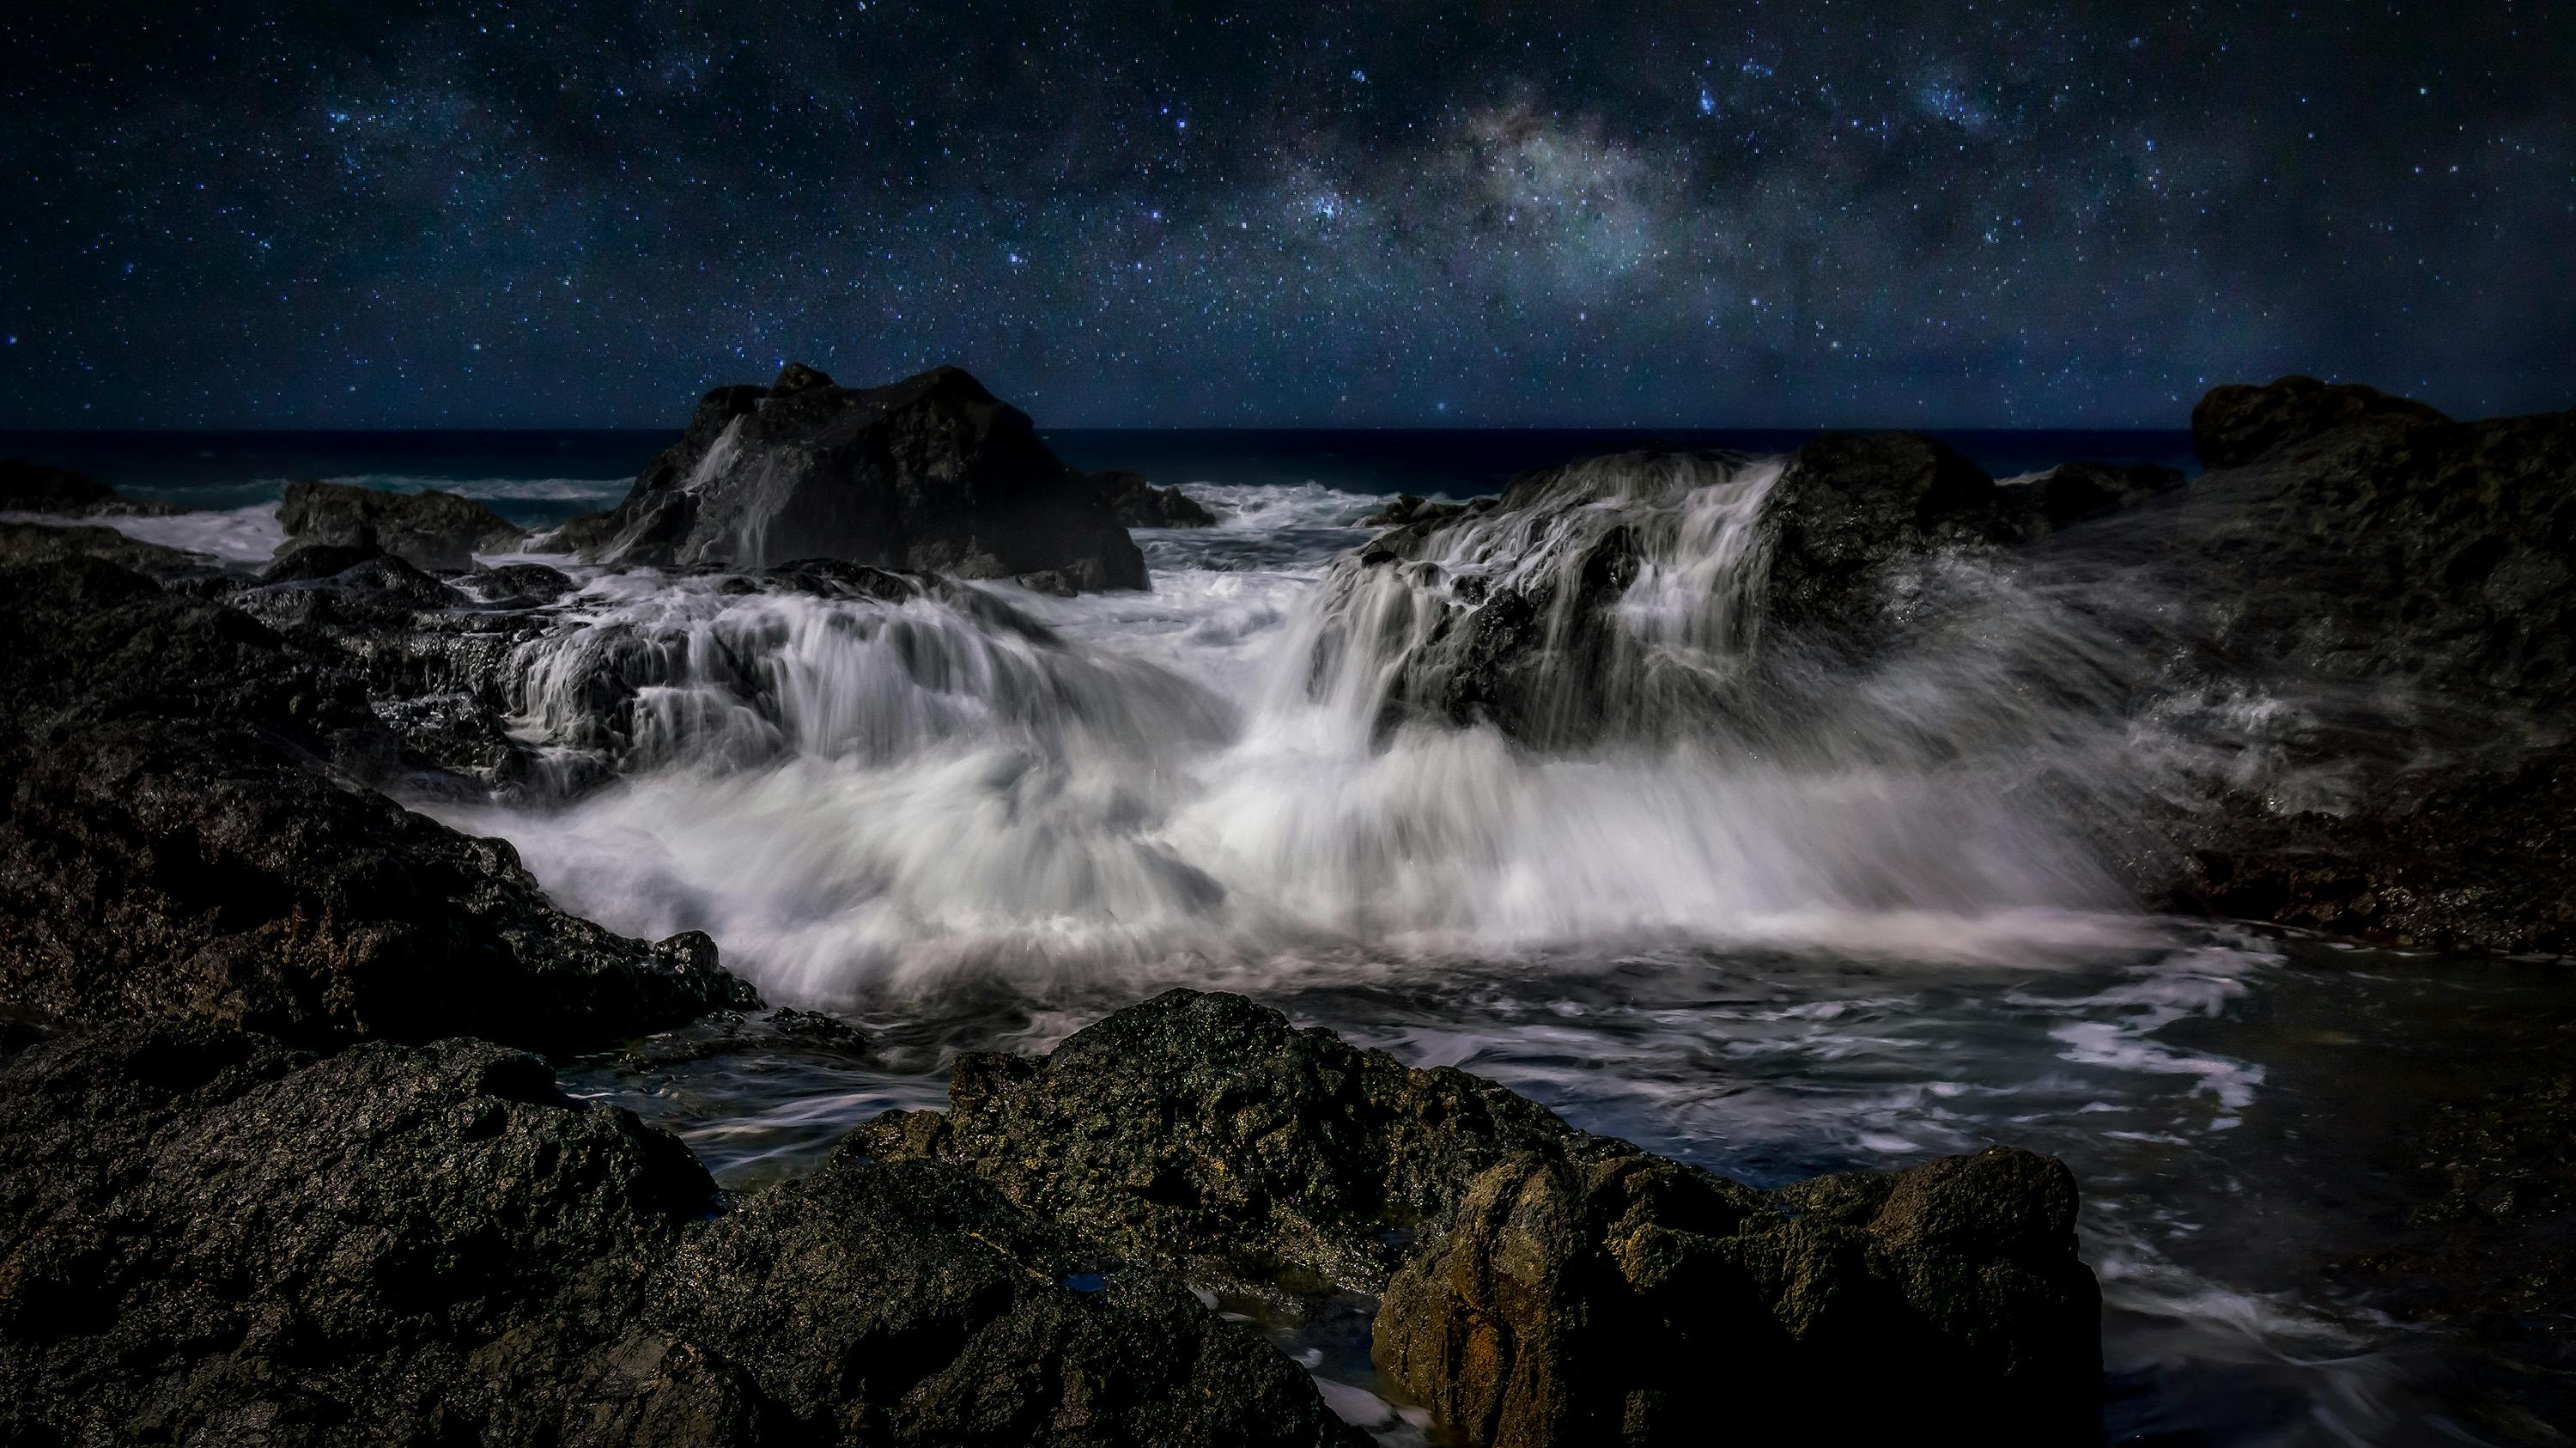 Night Star Ocean Scenery Milky Way Southern Ocean Australia HD 4K Wallpaper  #8.2871